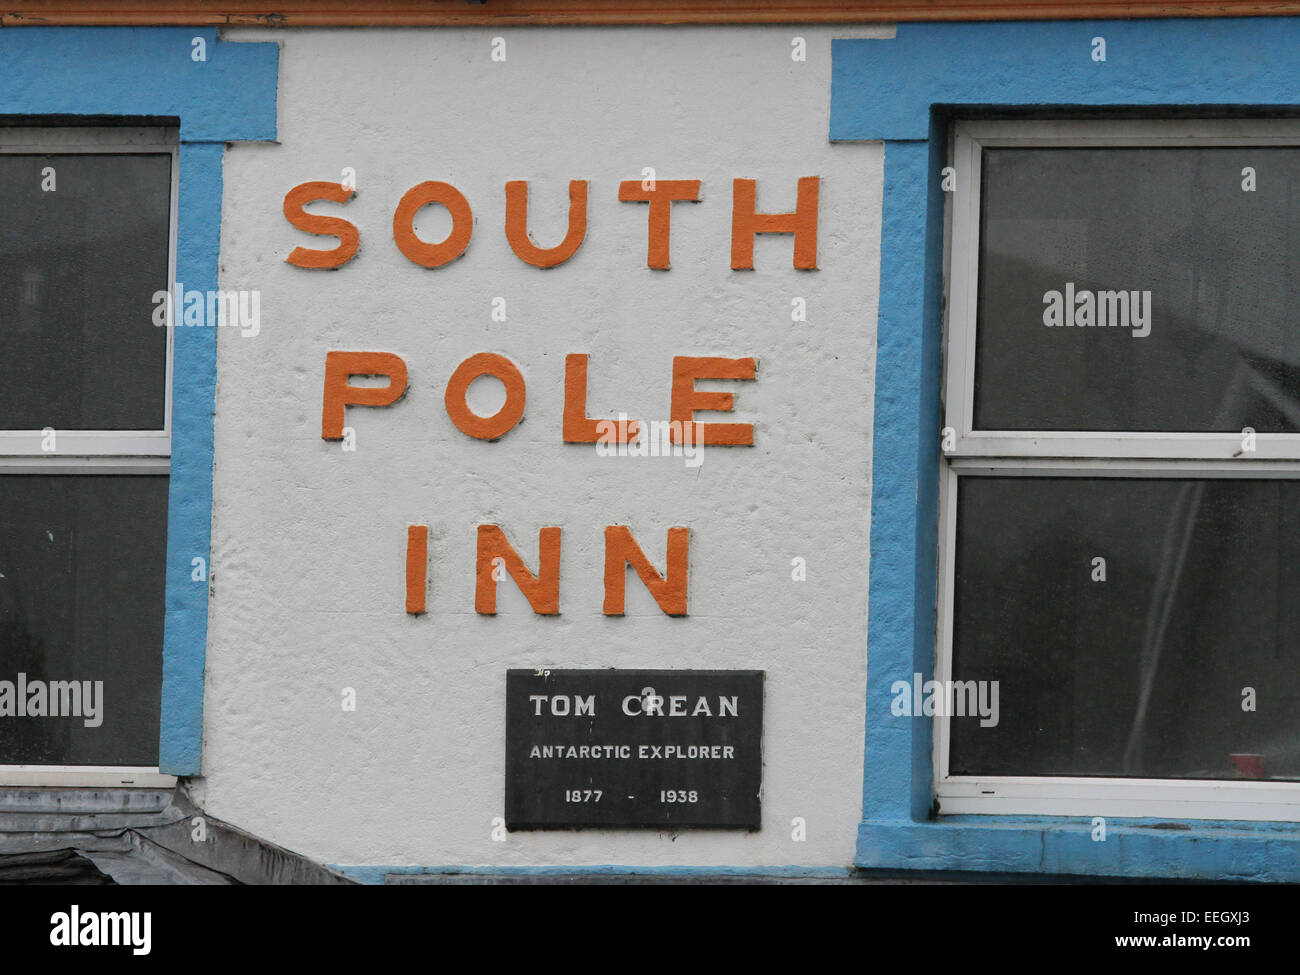 The South Pole Inn Annascaul County Kerry Ireland Stock Photo